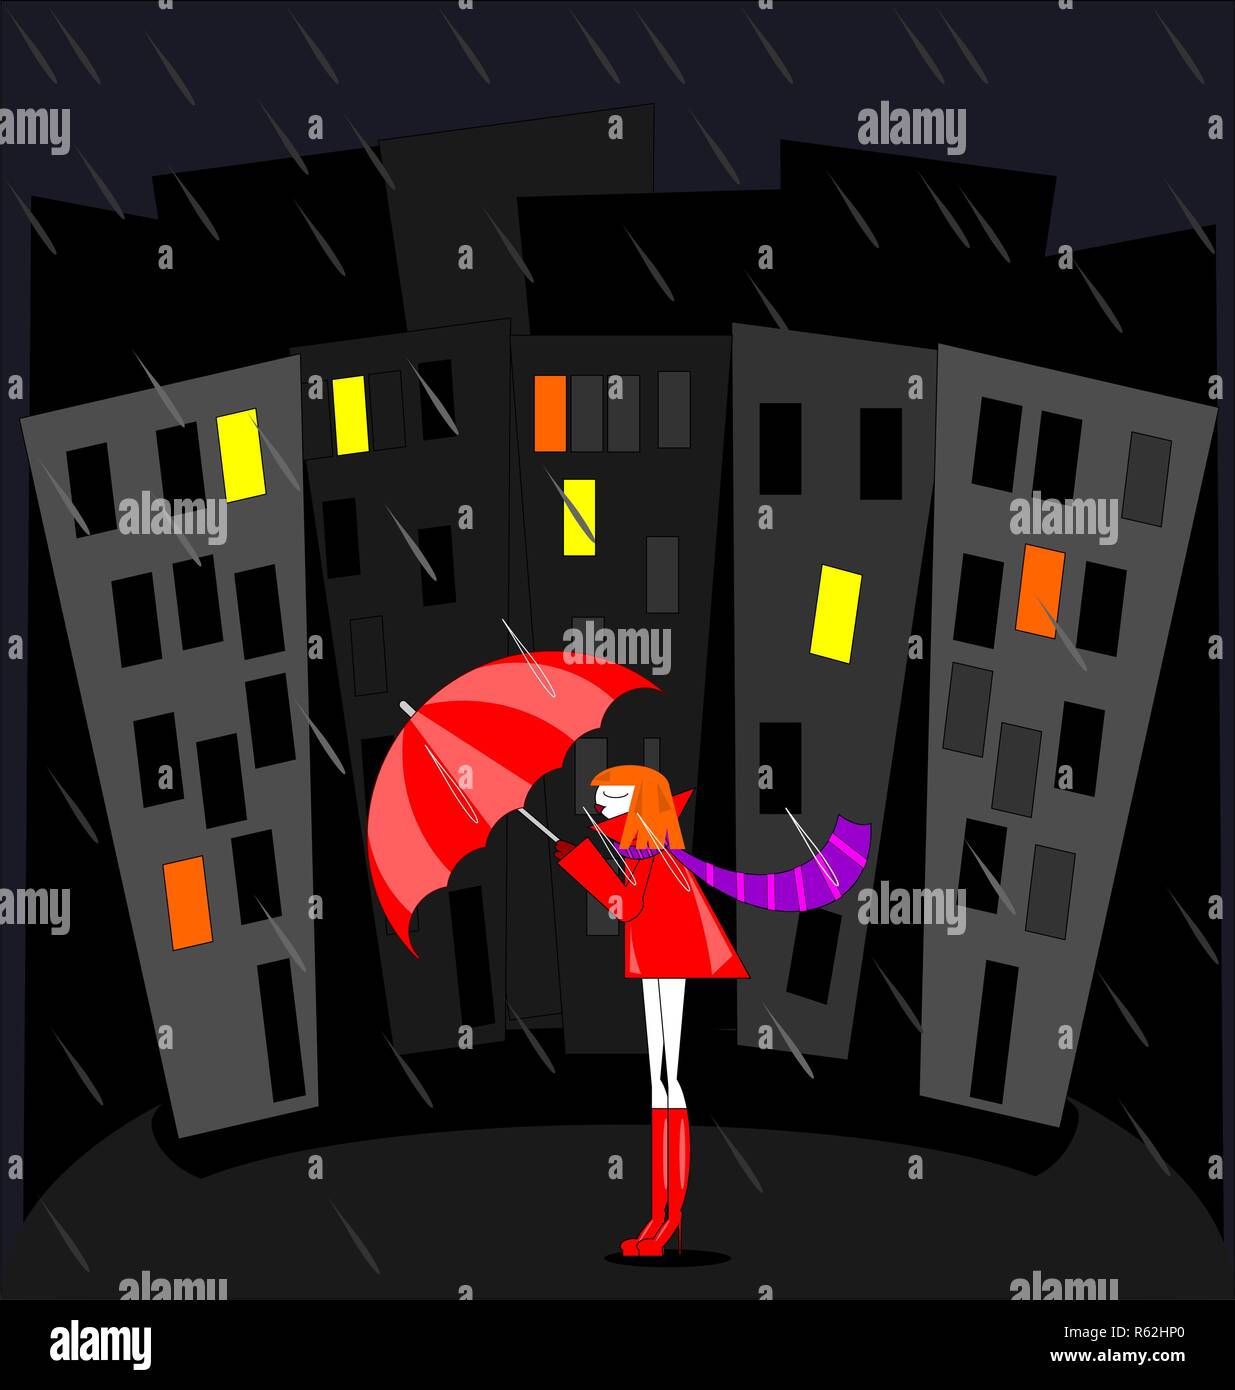 Abstract immagine a colori della città di notte, pioggia e ragazza di colore rosso Illustrazione Vettoriale